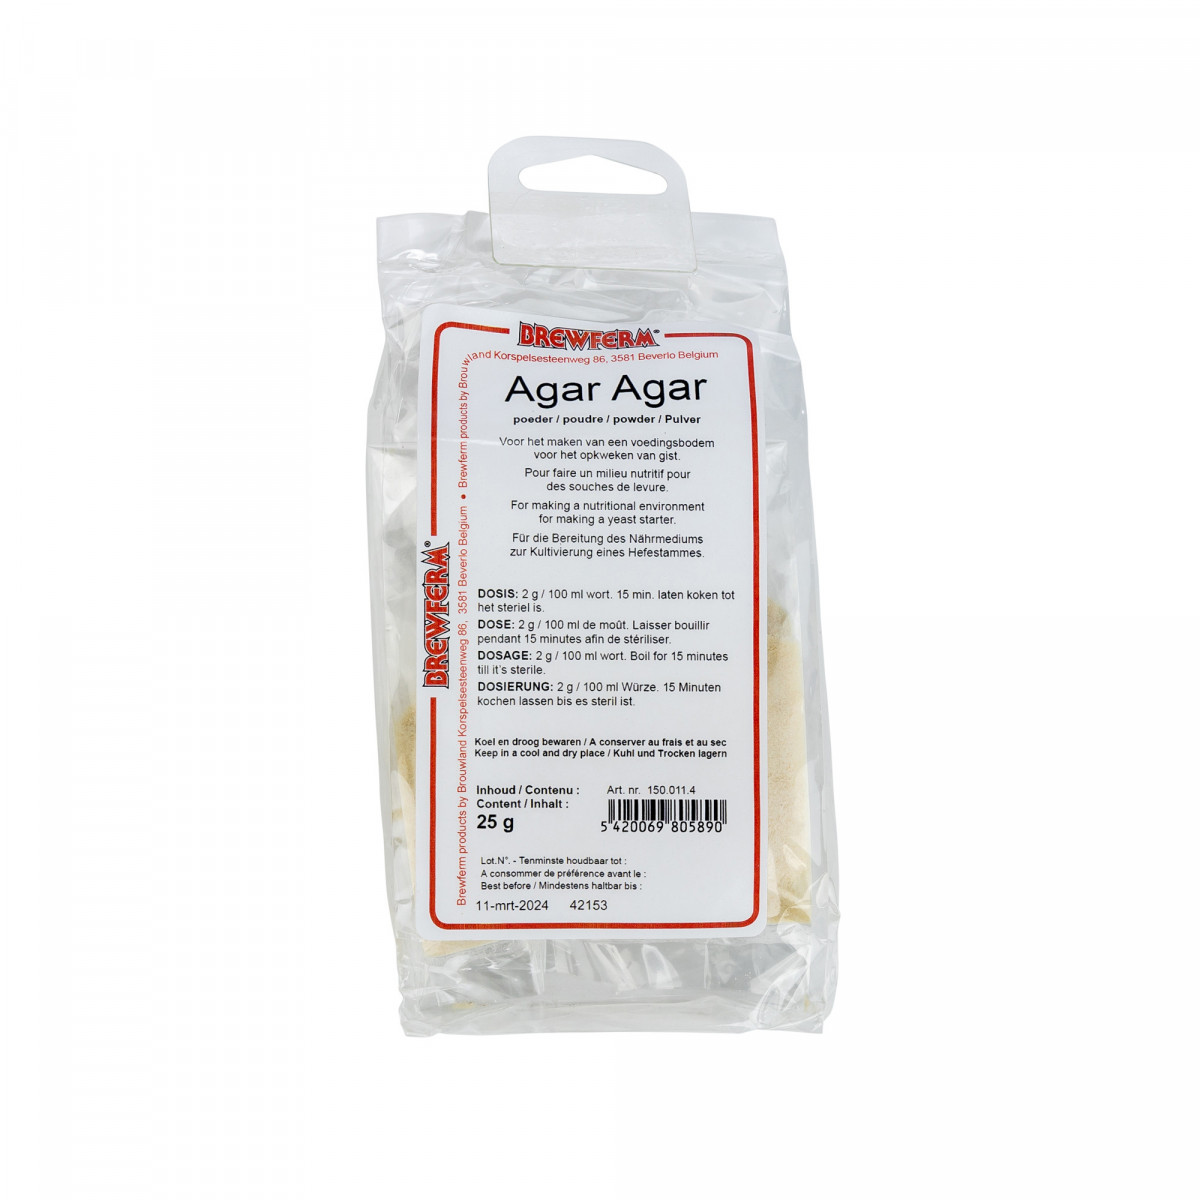 Agar-agar powder 25 g • Brouwland